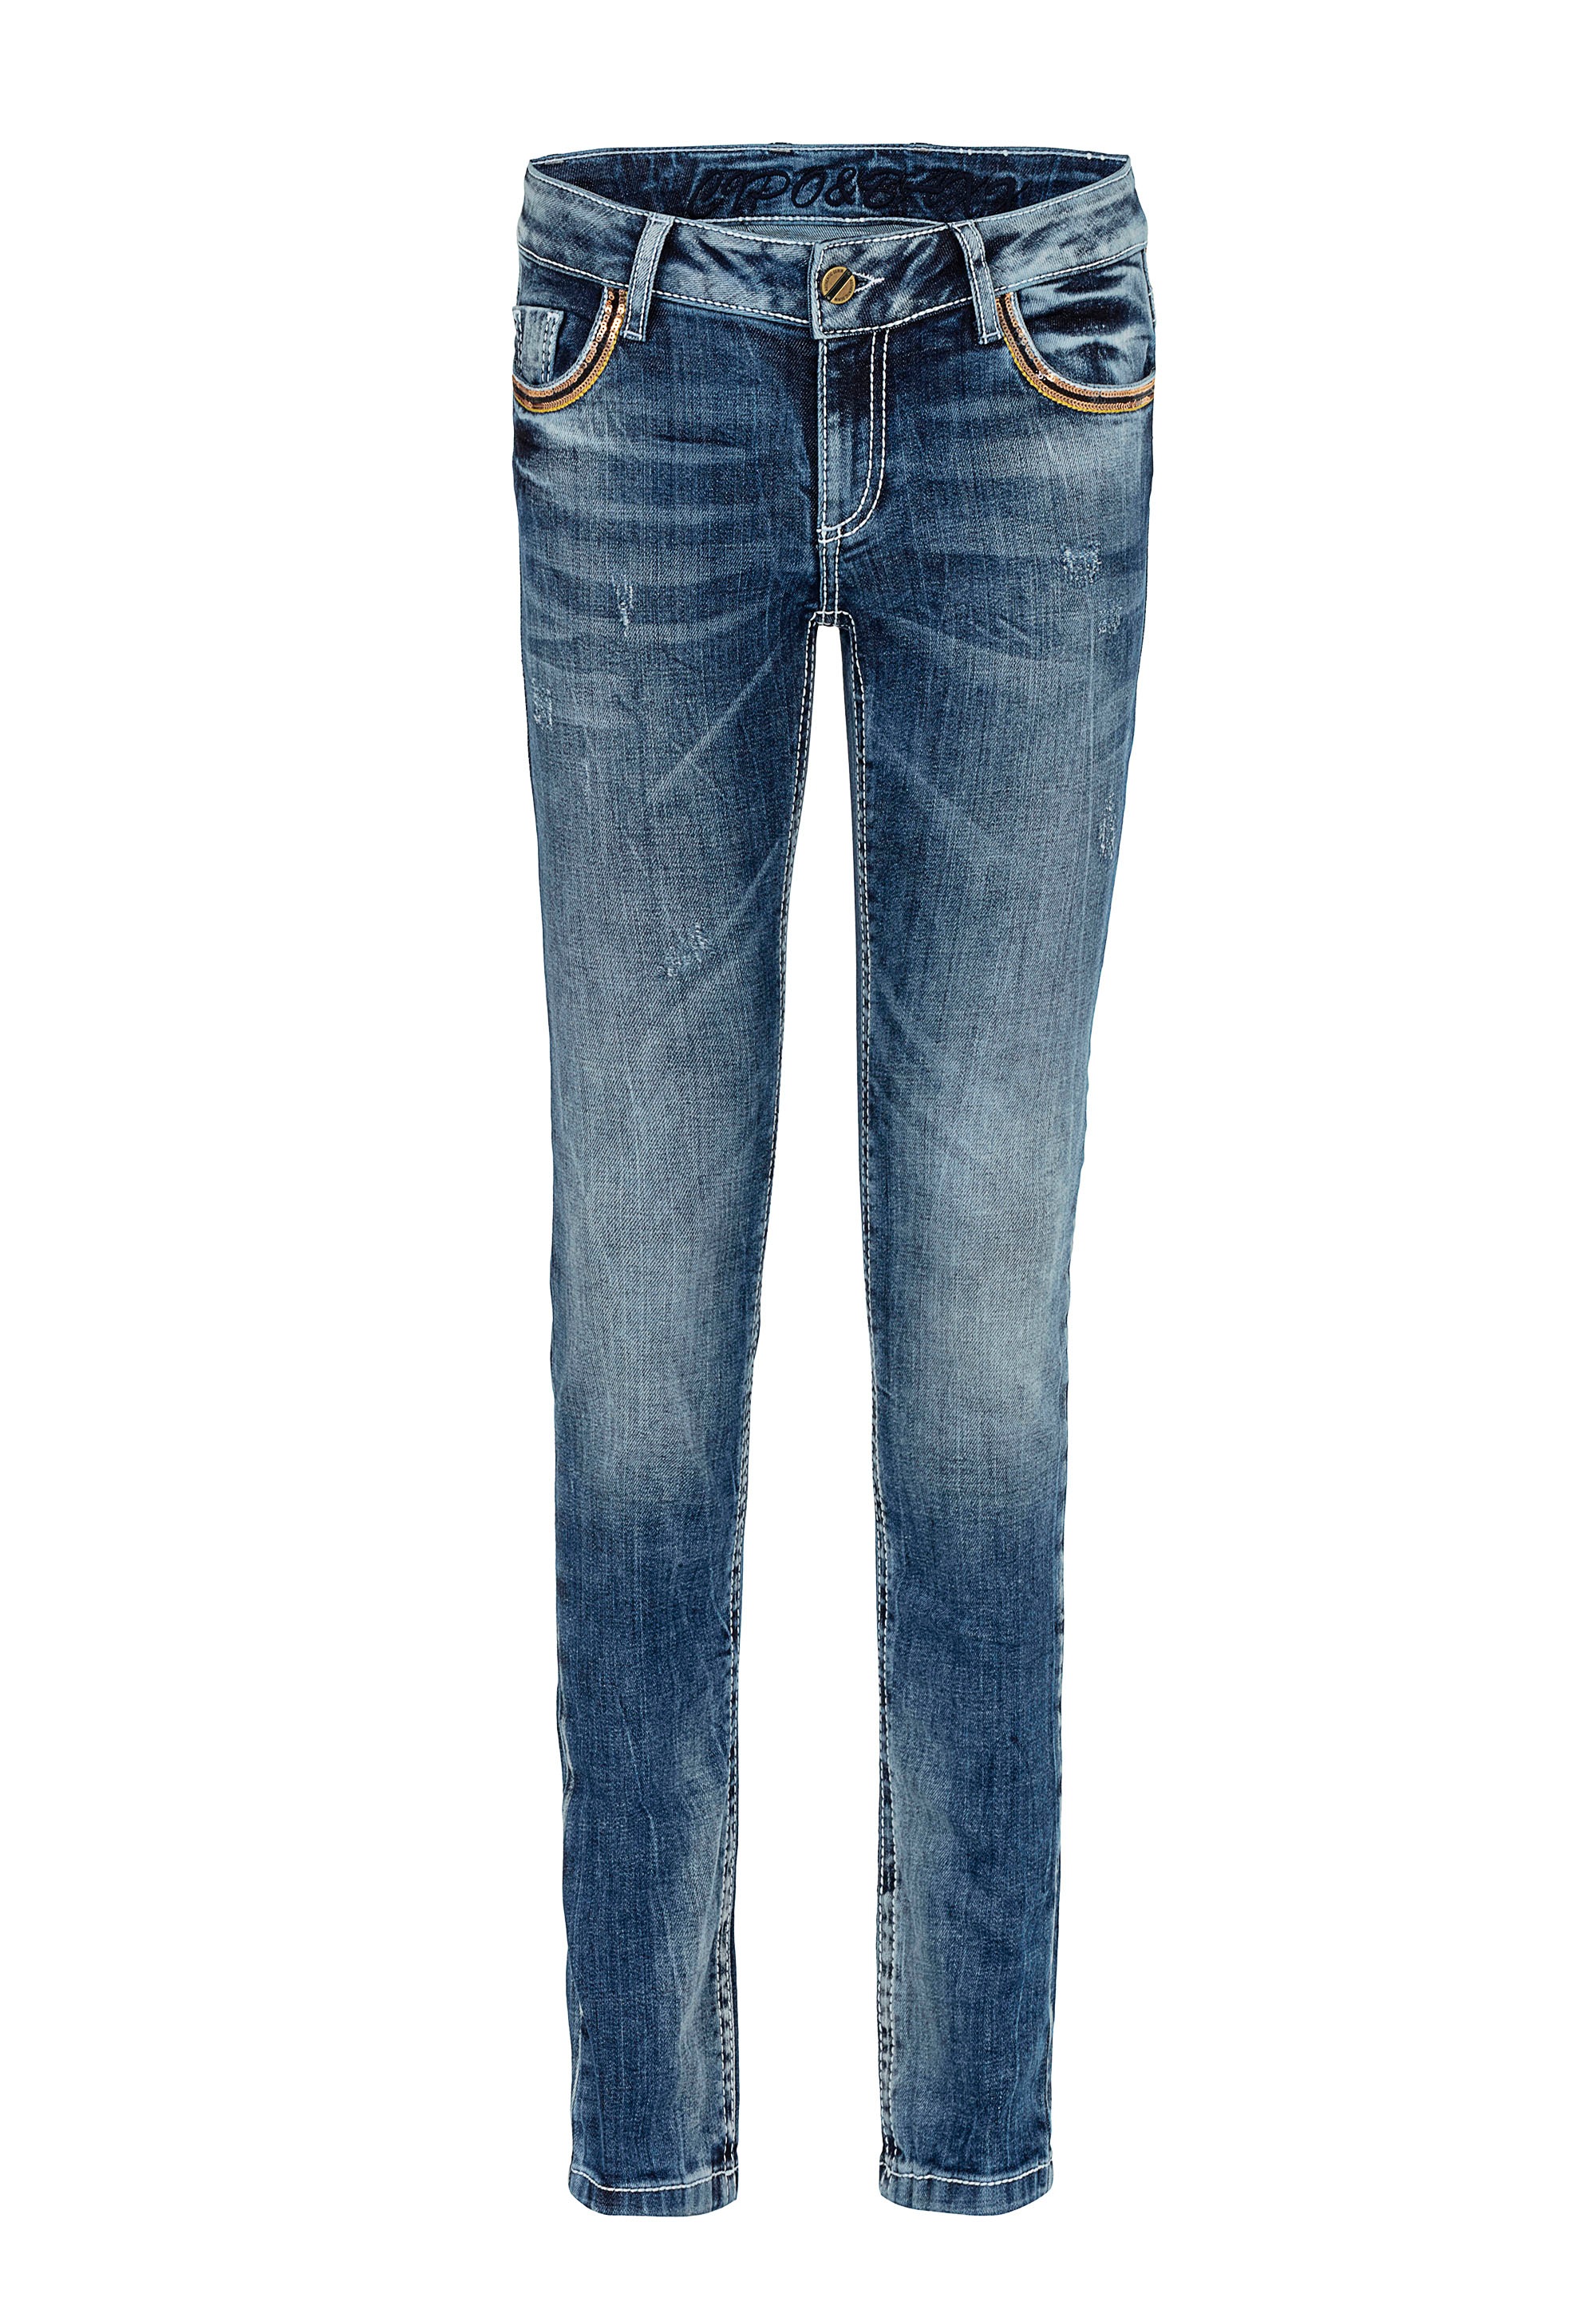 Cipo & Baxx Bequeme Jeans, mit Stickerei auf den Gesäßtaschen in Straight-Fit